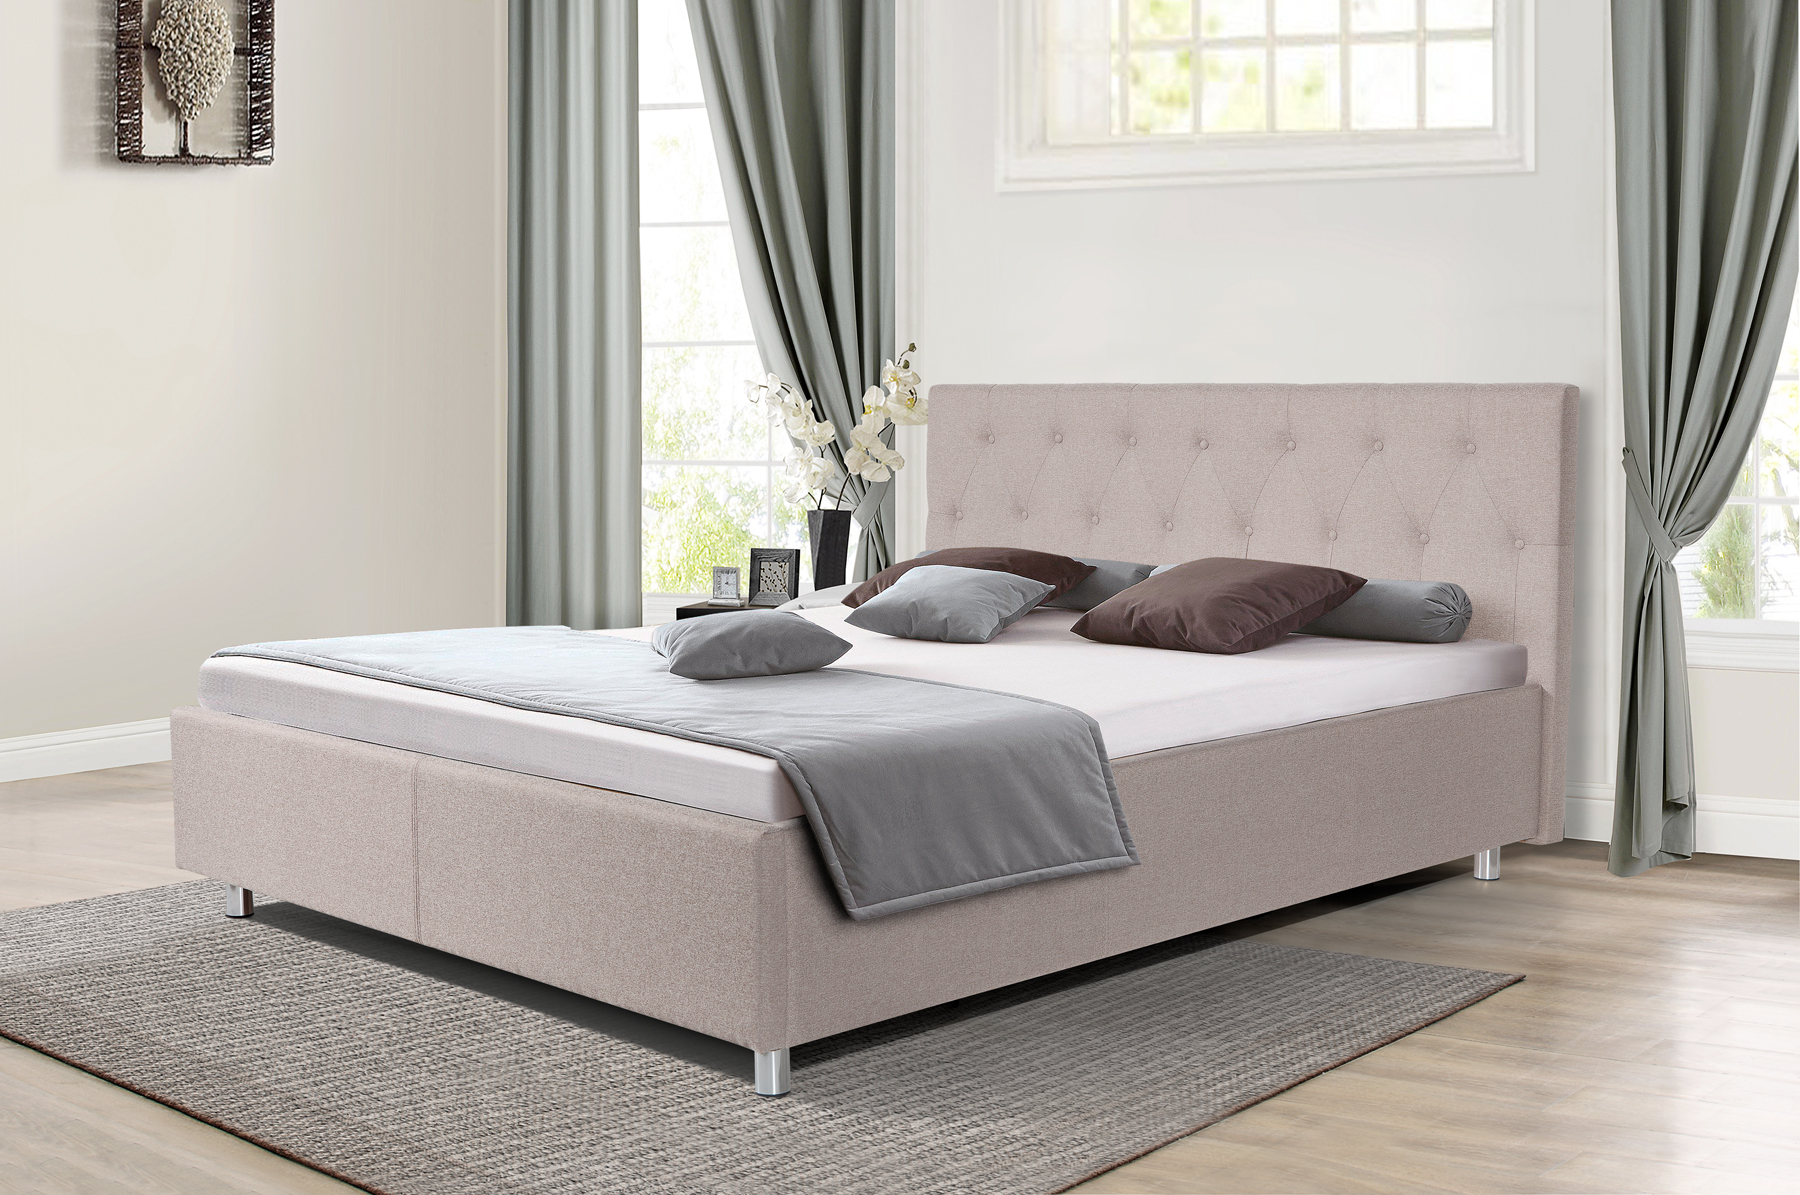 Двуспальная кровать «Софи 3» с подьемным механизмом – изображение 1